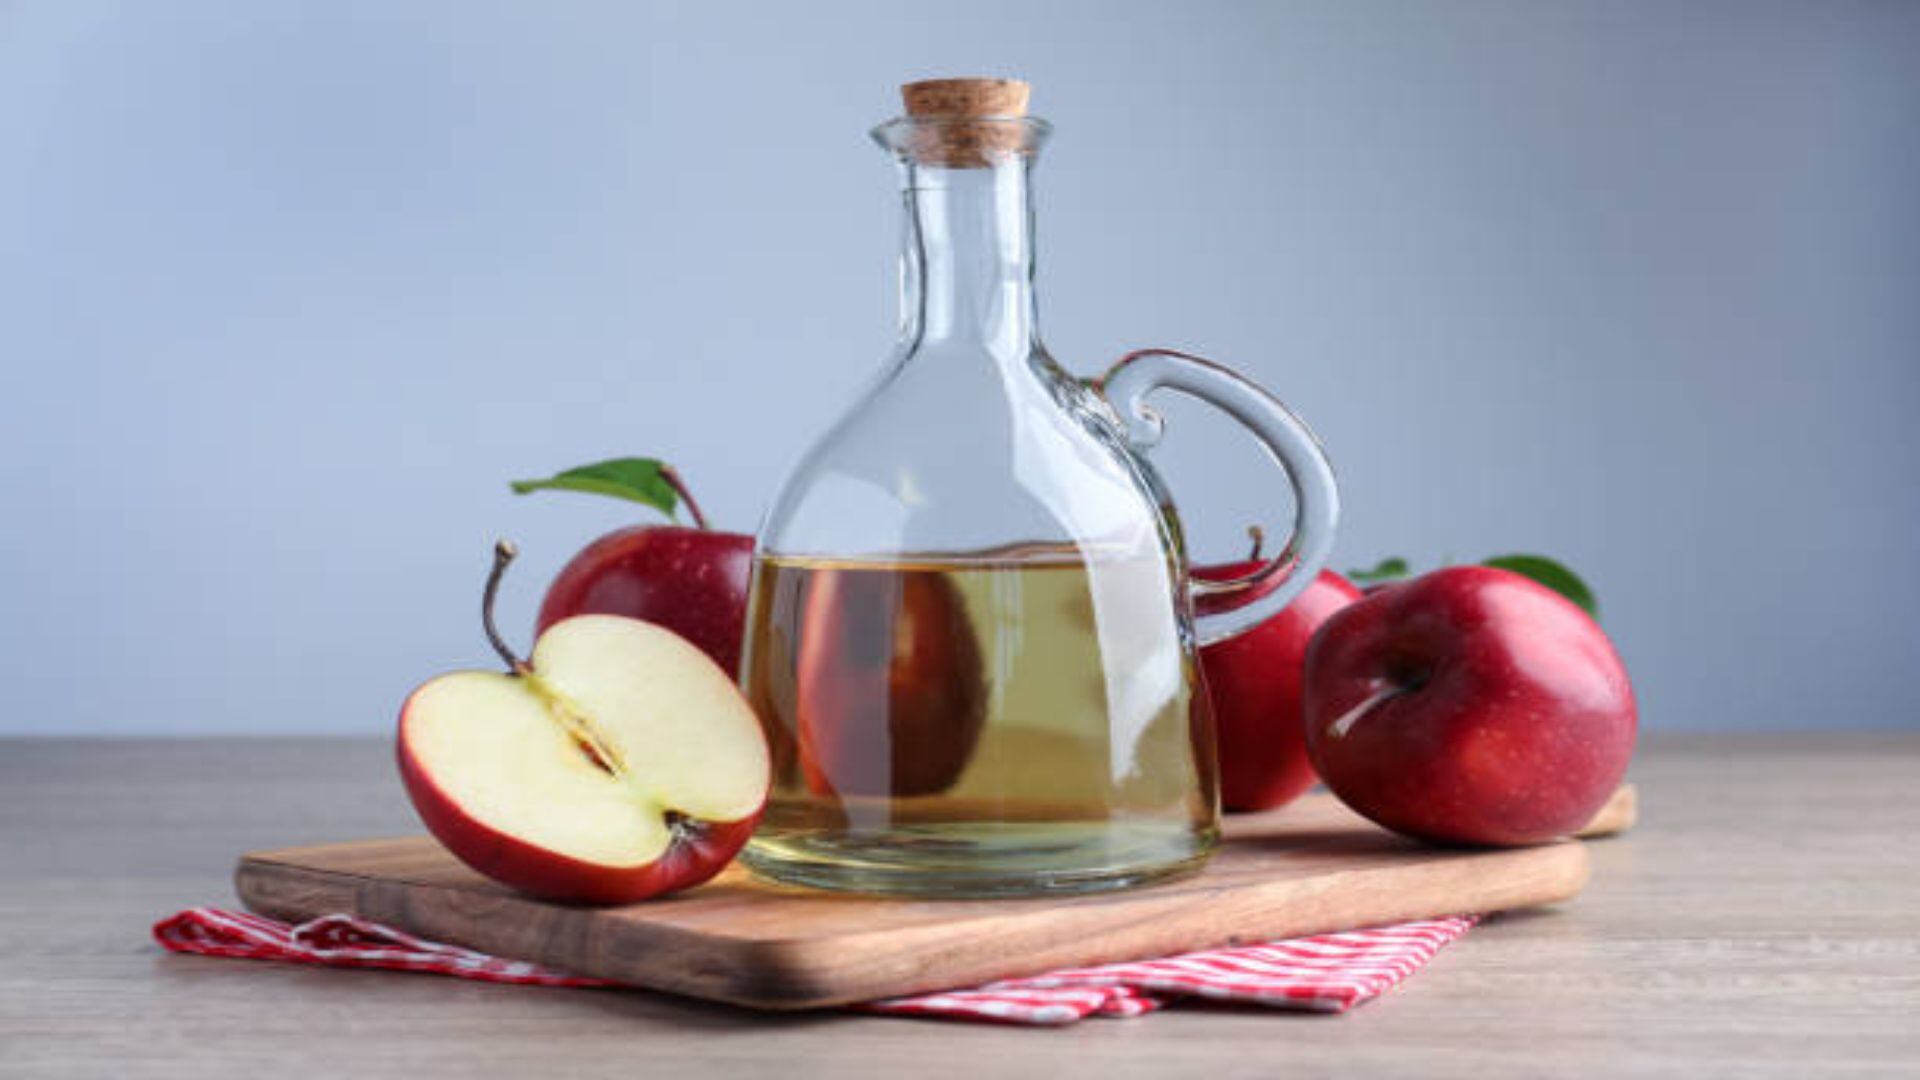 Médicos y nutricionistas enfatizan en la importancia de usar el vinagre de sidra de manzana con precaución (pixabay)